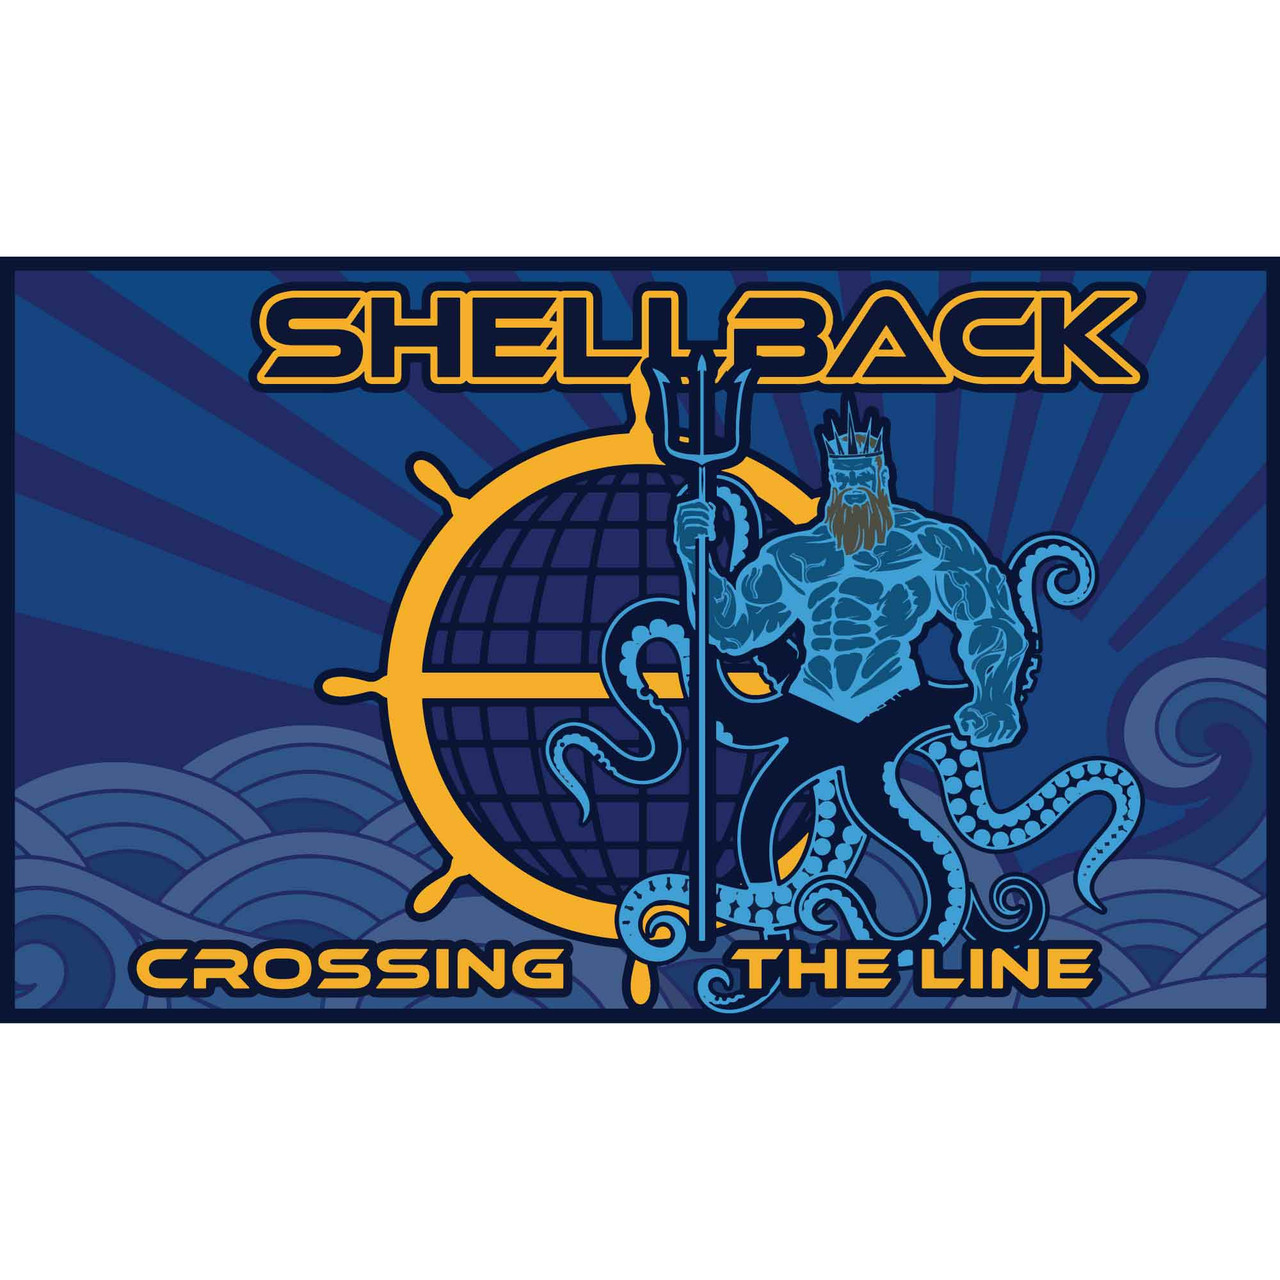 Shellback Crossing the Line Flag: Custom Design 3 x 5 - flag in full color detail waving